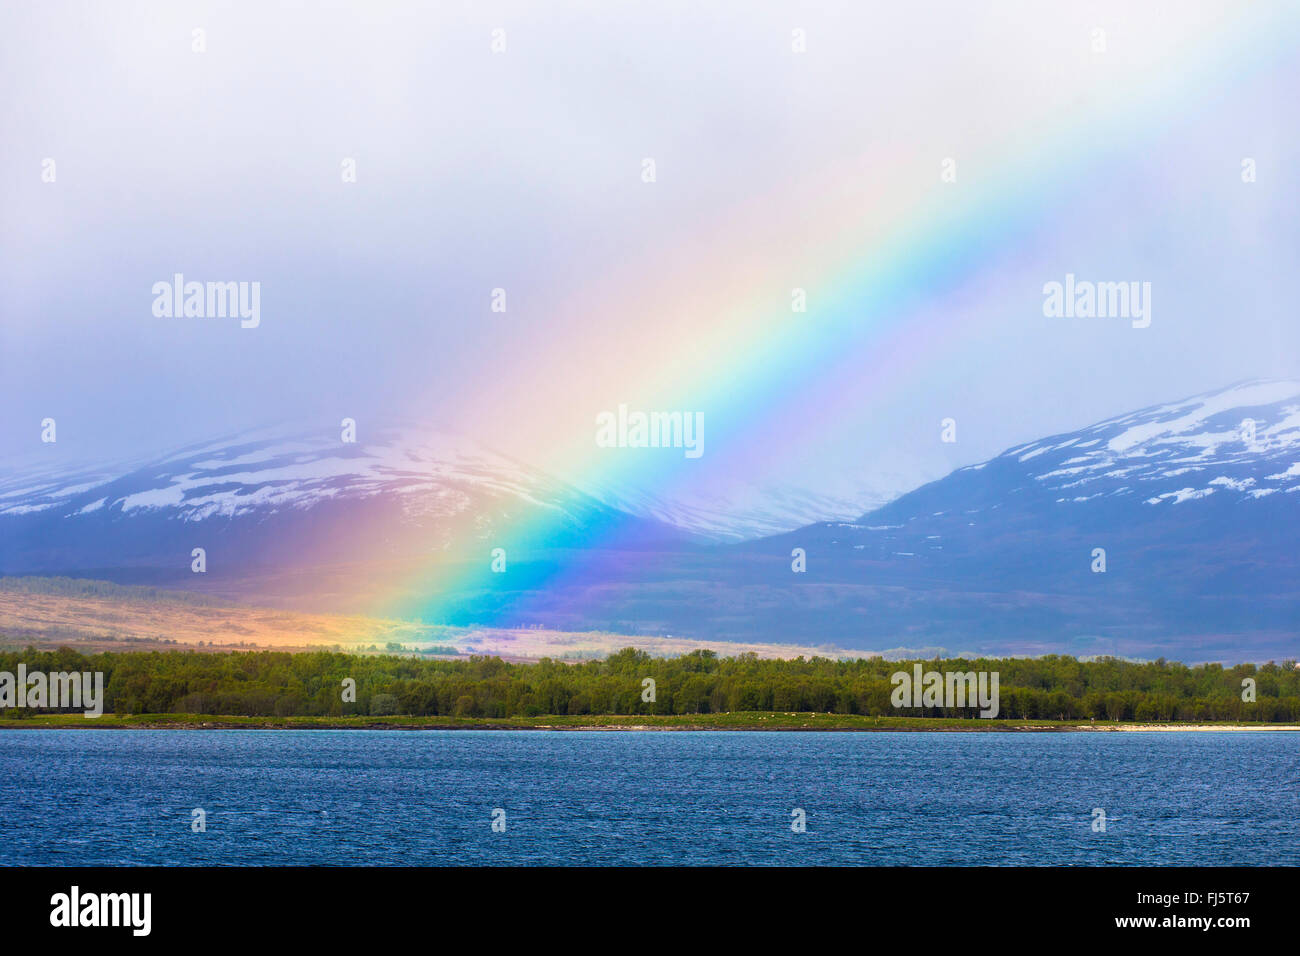 Île arc-en-ciel sur Grindoeya, Norvège, Troms, Tromsoe, Kvaloeya Grindoeya Sandnessund,,, la Norvège, Troms Banque D'Images